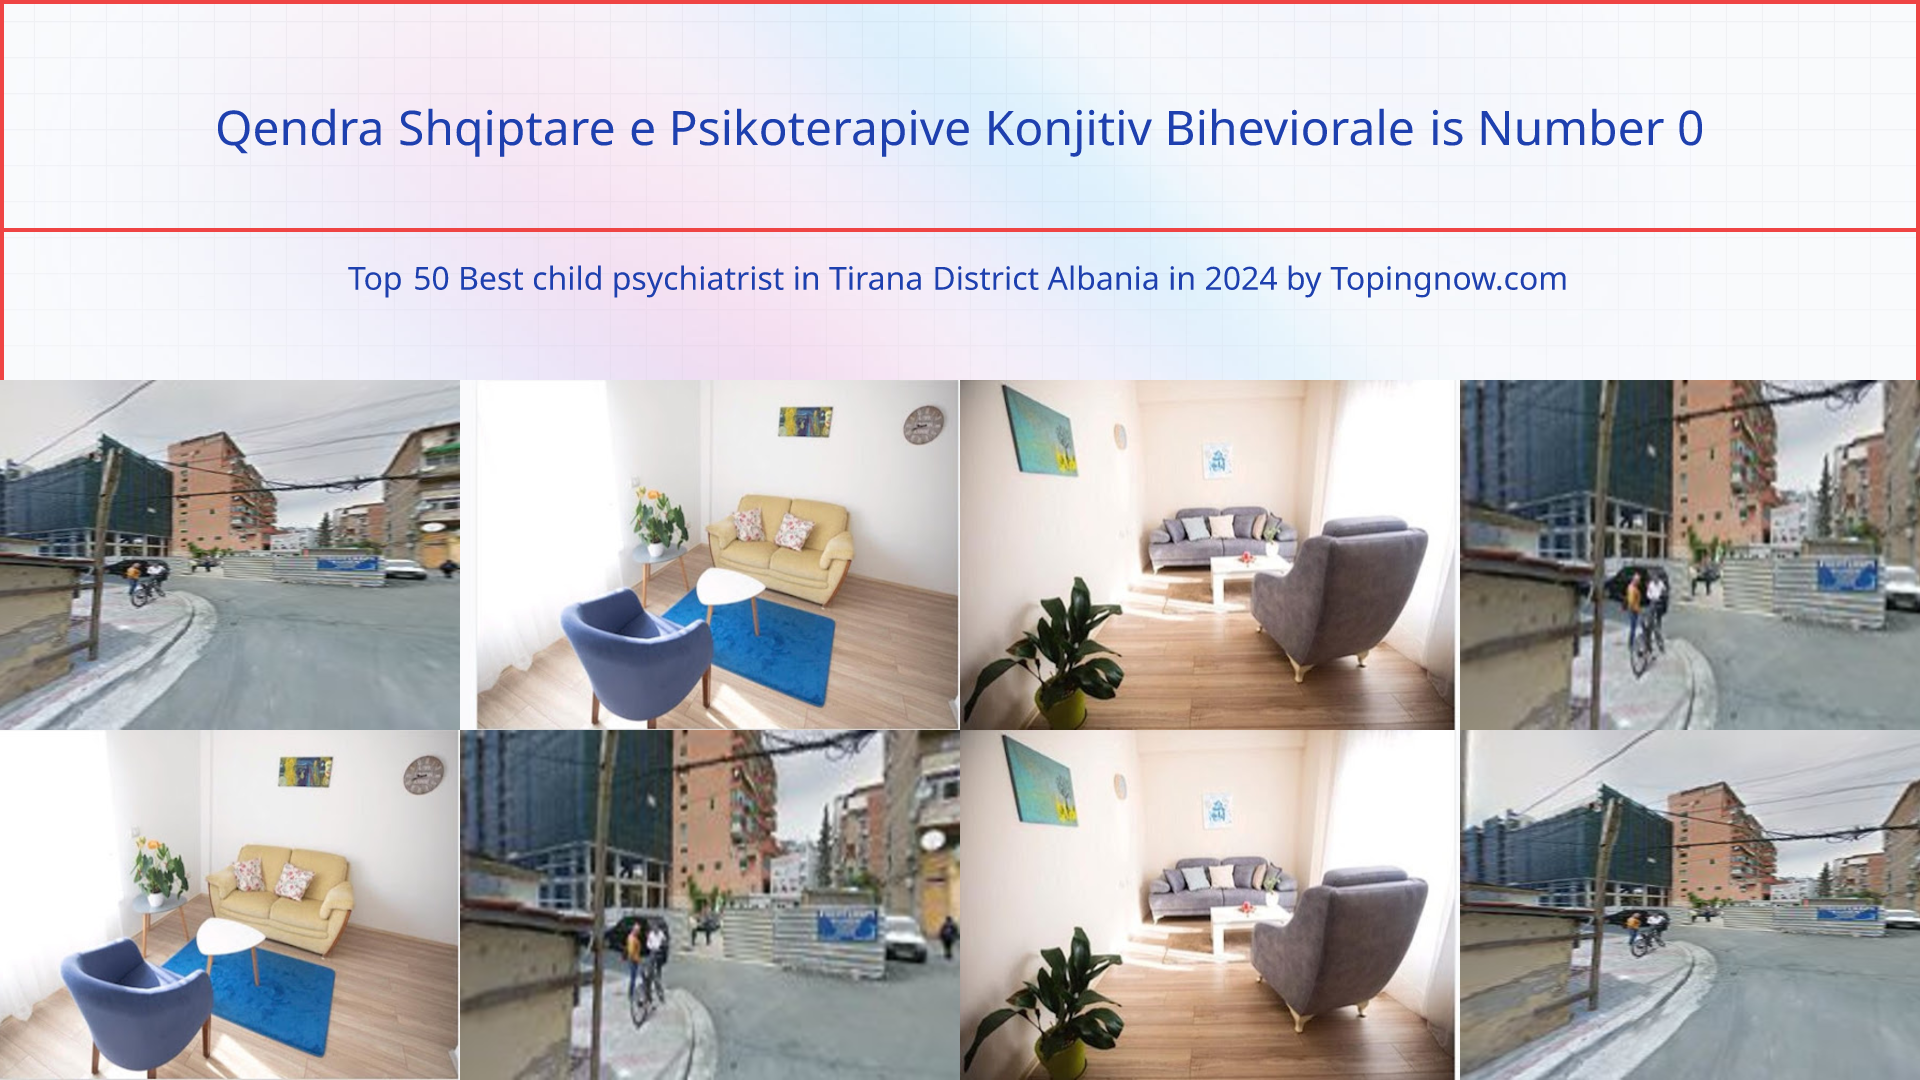 Qendra Shqiptare e Psikoterapive Konjitiv Biheviorale: Top 50 Best child psychiatrist in Tirana District Albania in 2024